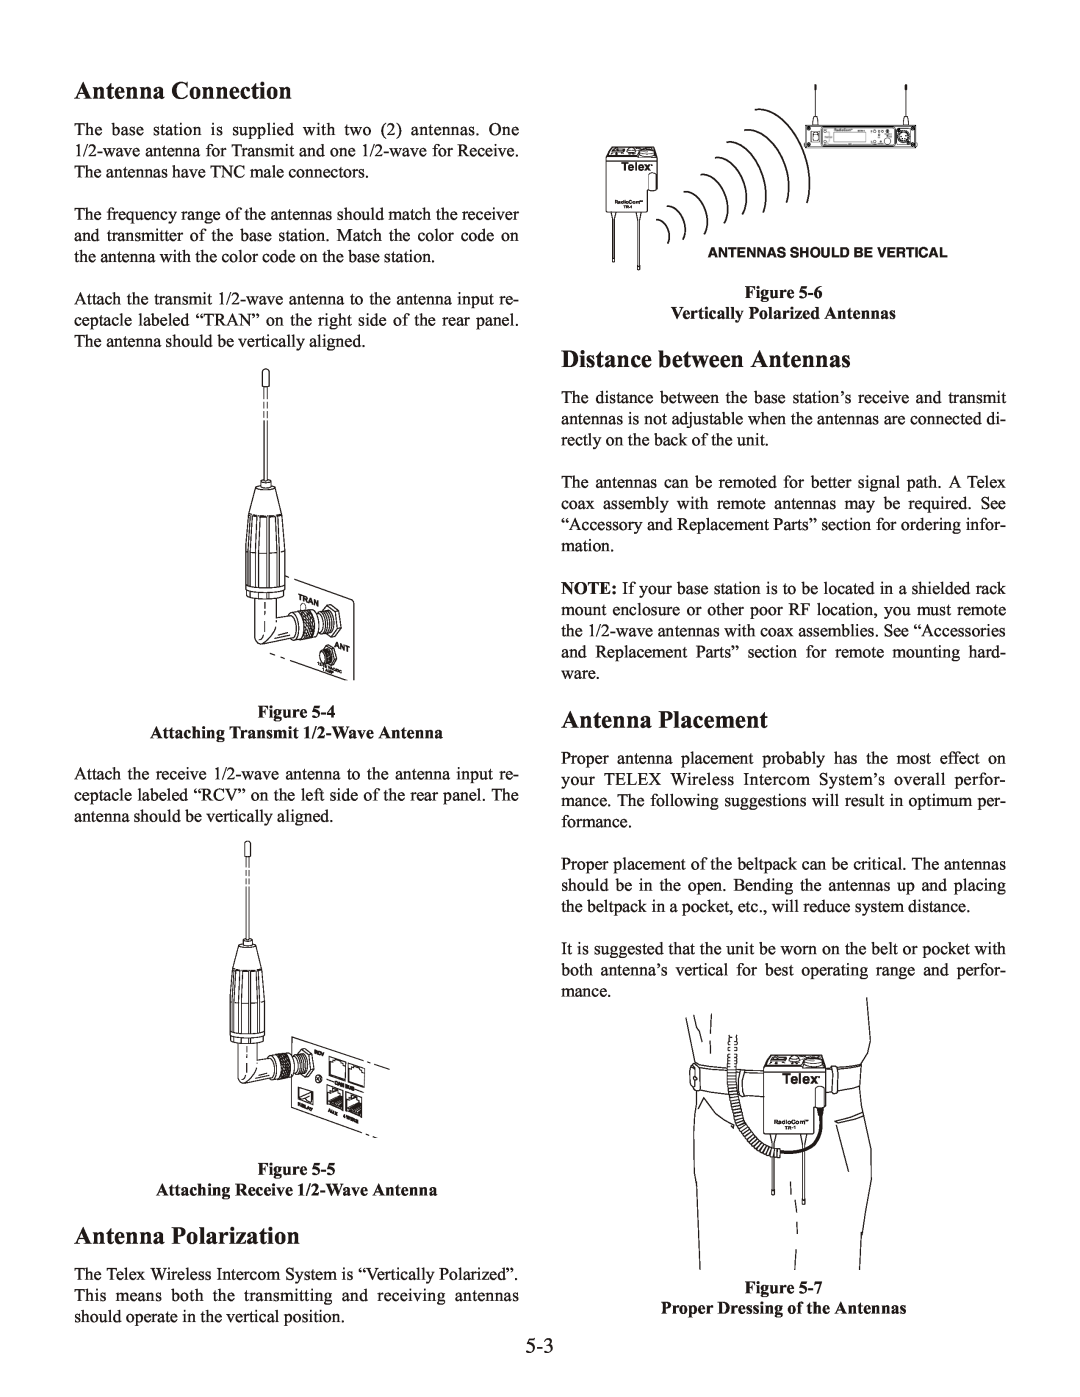 Telex BTR-1 Antenna Connection, Antenna Polarization, Distance between Antennas, Antenna Placement 